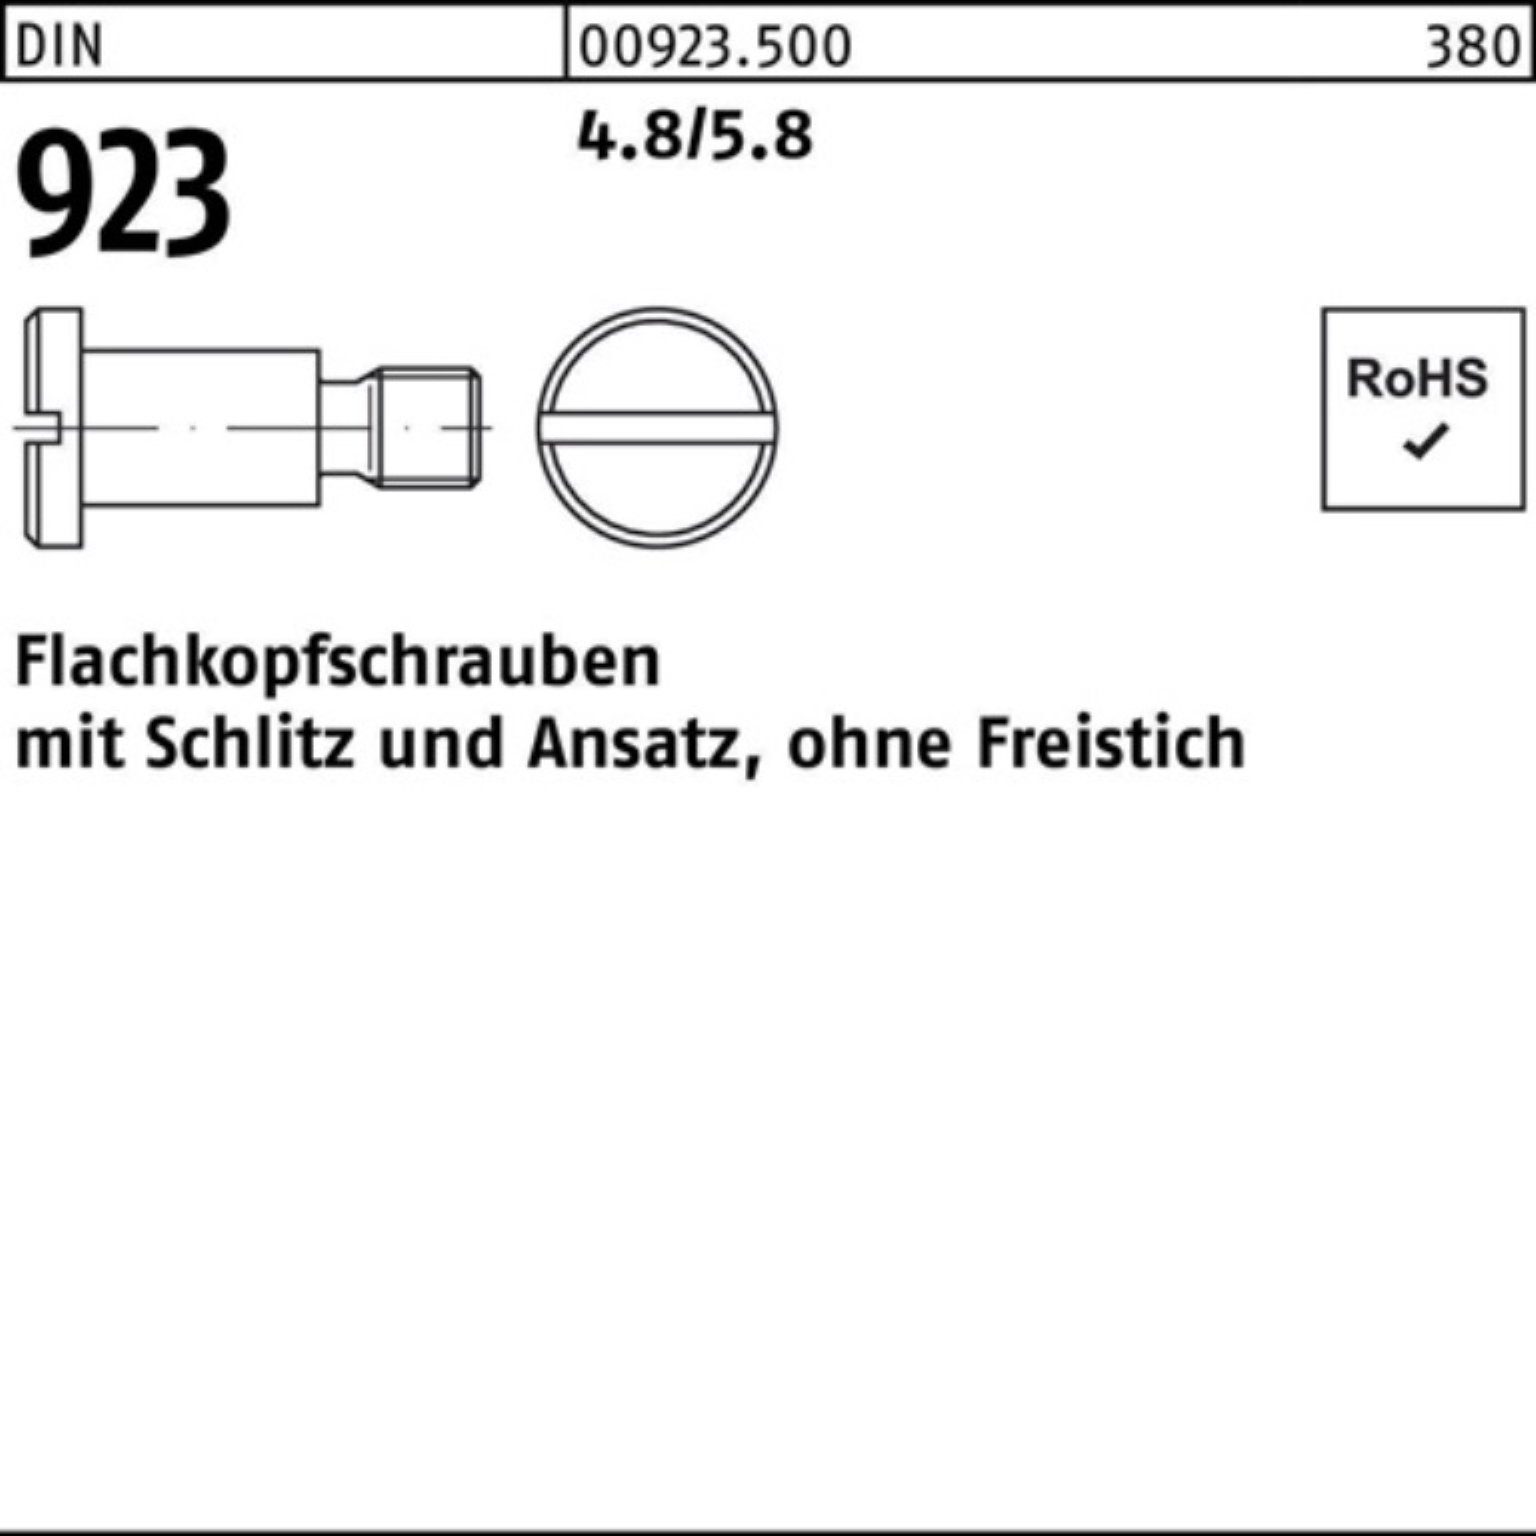 Flachkopfschraube Reyher 923 DIN Pack Schlitz/Ansatz 100er Schraube M3x10x 4,5 4.8/5.8